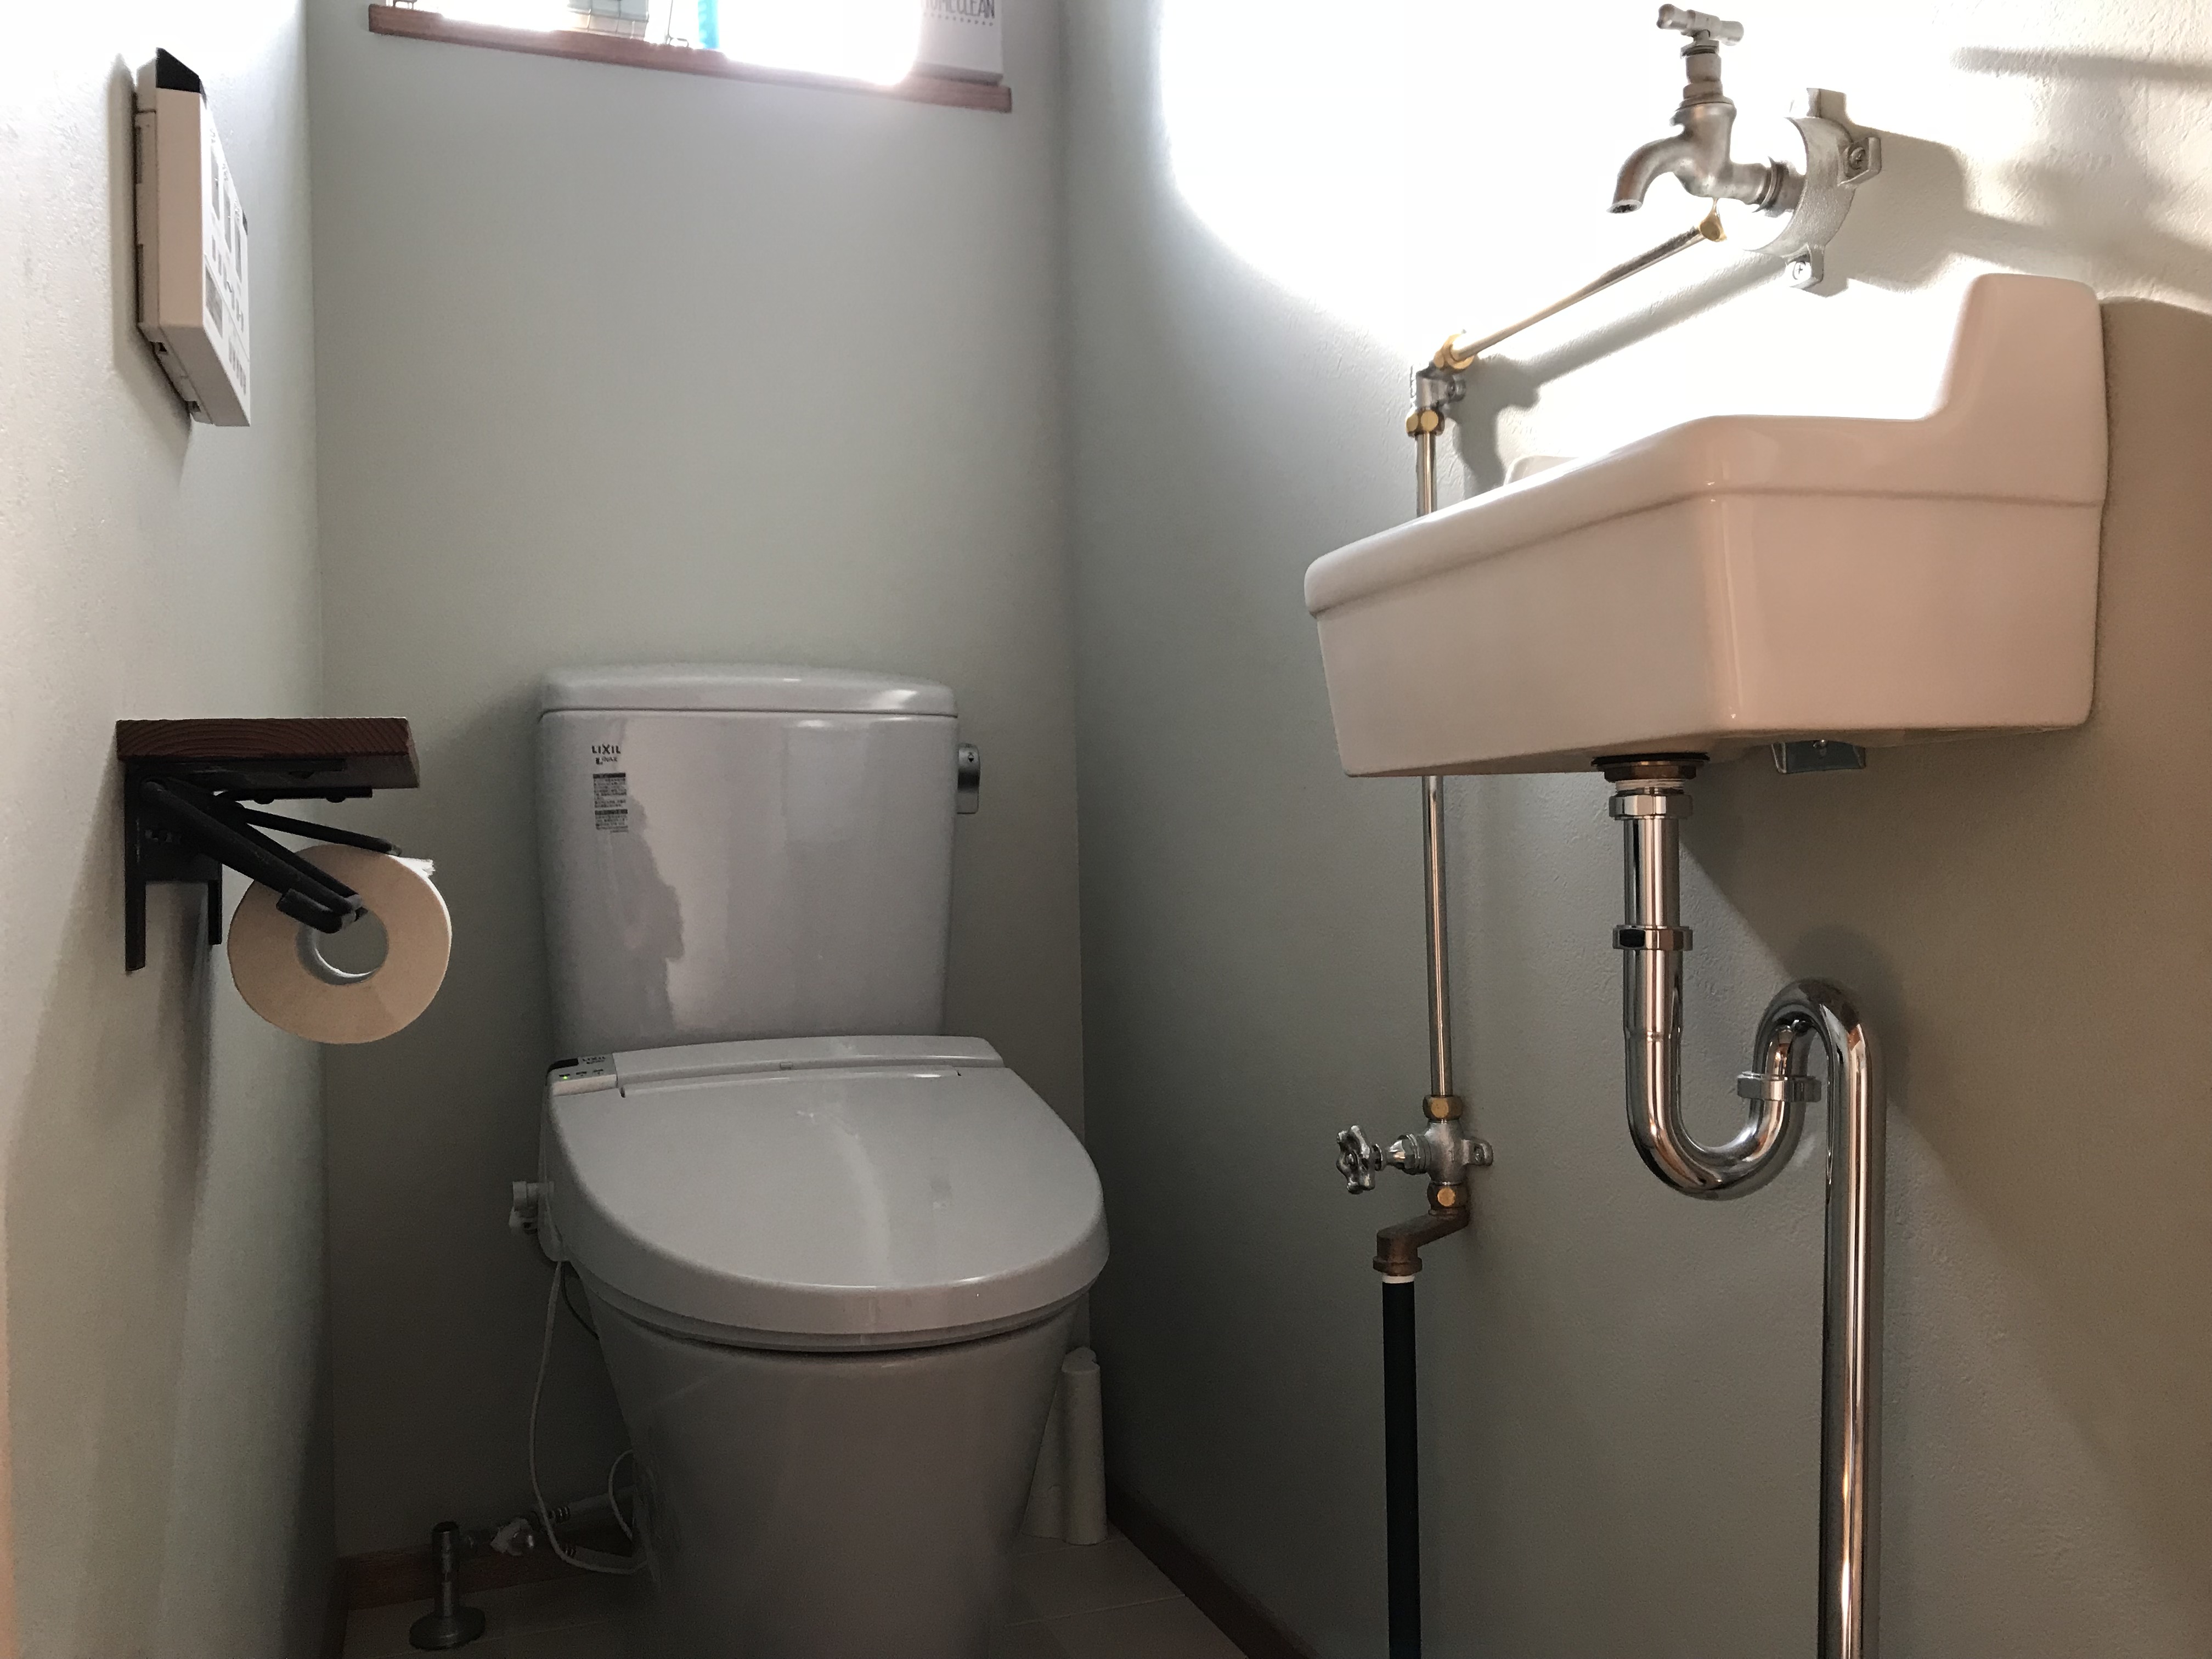 トイレの手洗いは別に設置がおすすめ そのための広さはどのくらい必要